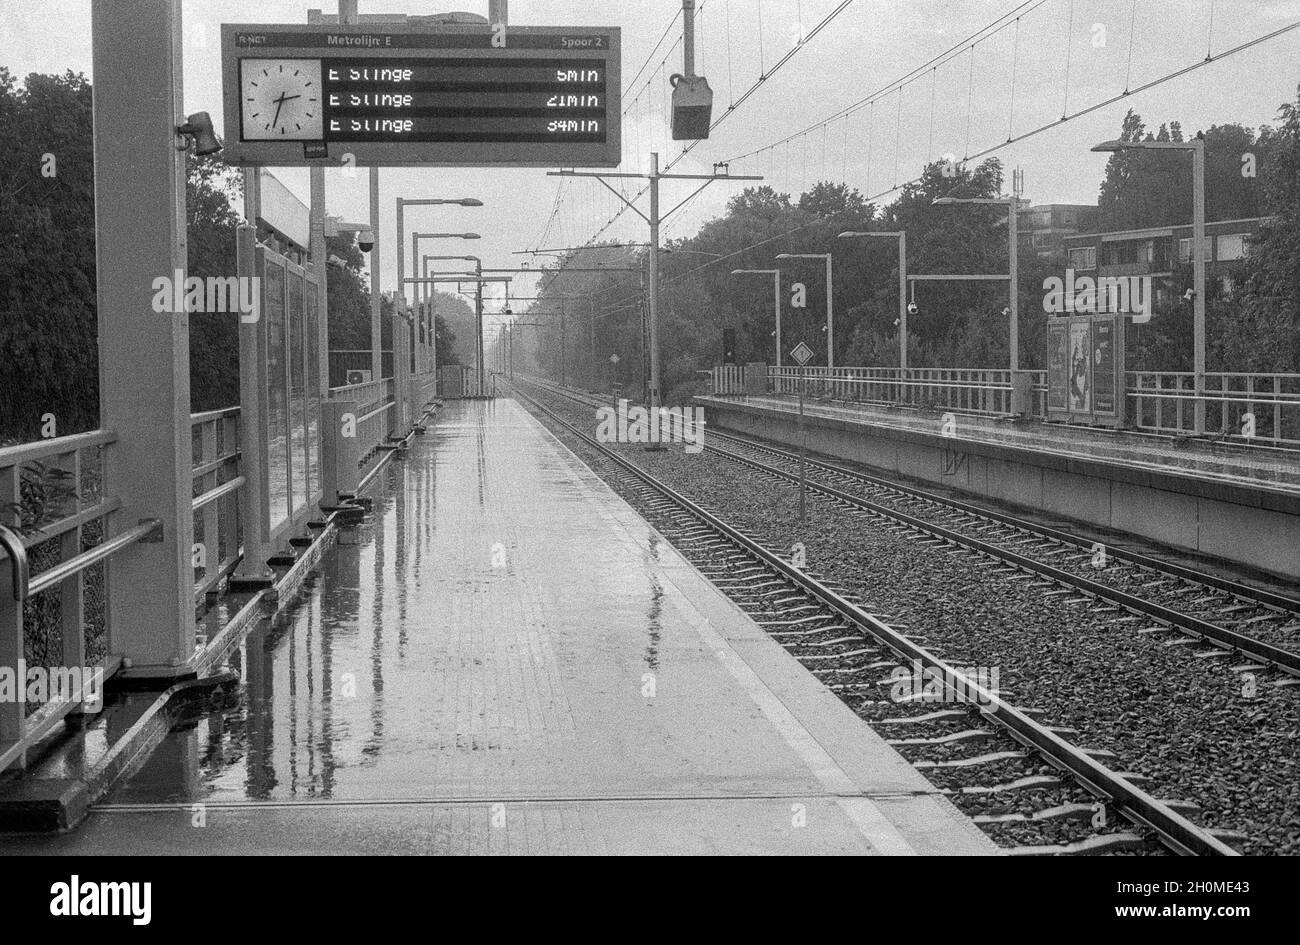 Rotterdam, Niederlande. Ein sehr regnerischer Tag auf dem Bahnsteig einer erhöhten U-Bahn-Station, an dem es sonnig und warm sein sollte. Der Klimawandel verursacht eine enorme Zunahme von Regen und Sturm an Orten, an denen sie tatsächlich sehr viel Schaden anrichten können, z. B. an der Infrastruktur. Sammlung: gkf-analoog Stockfoto